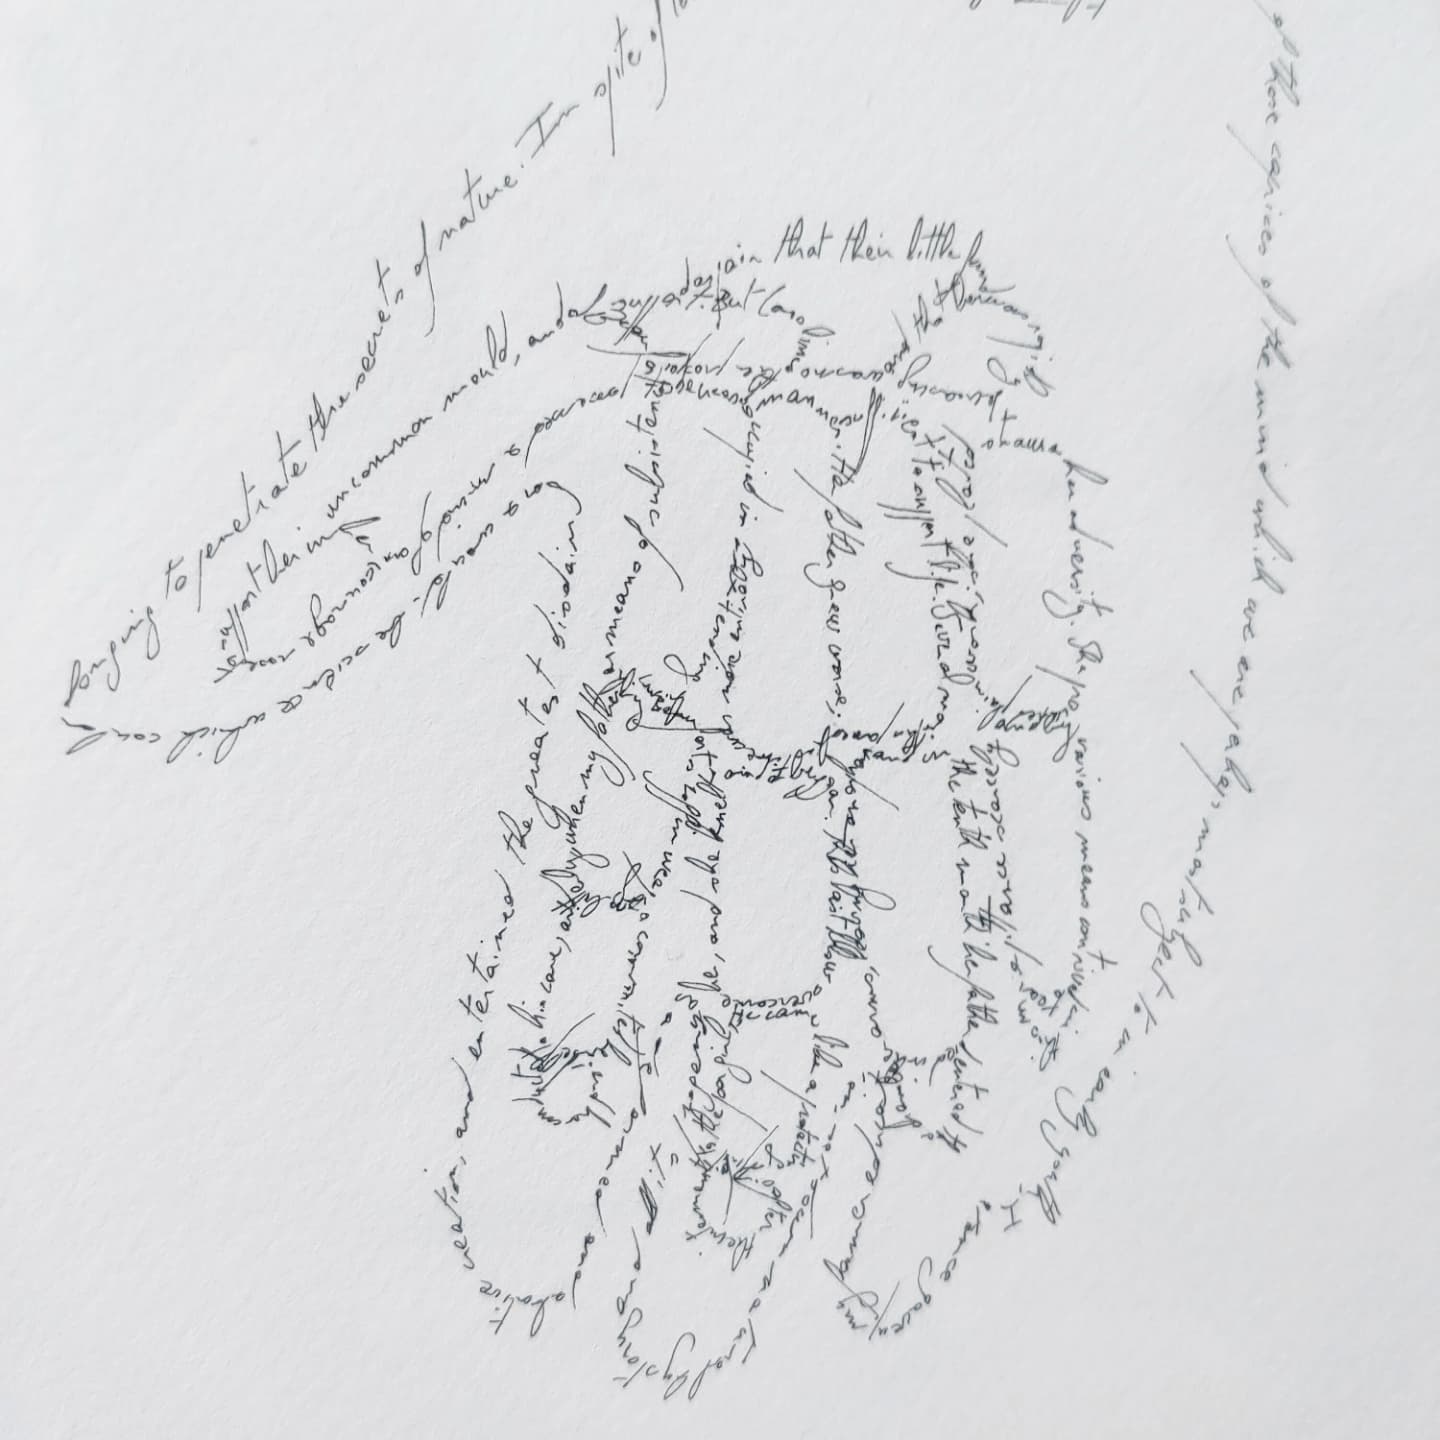 La Nature humaine (détail), Marc Molk, 2021, calligramme, encre de Chine et acrylique sur papier, 84,5 x 129,5 cm